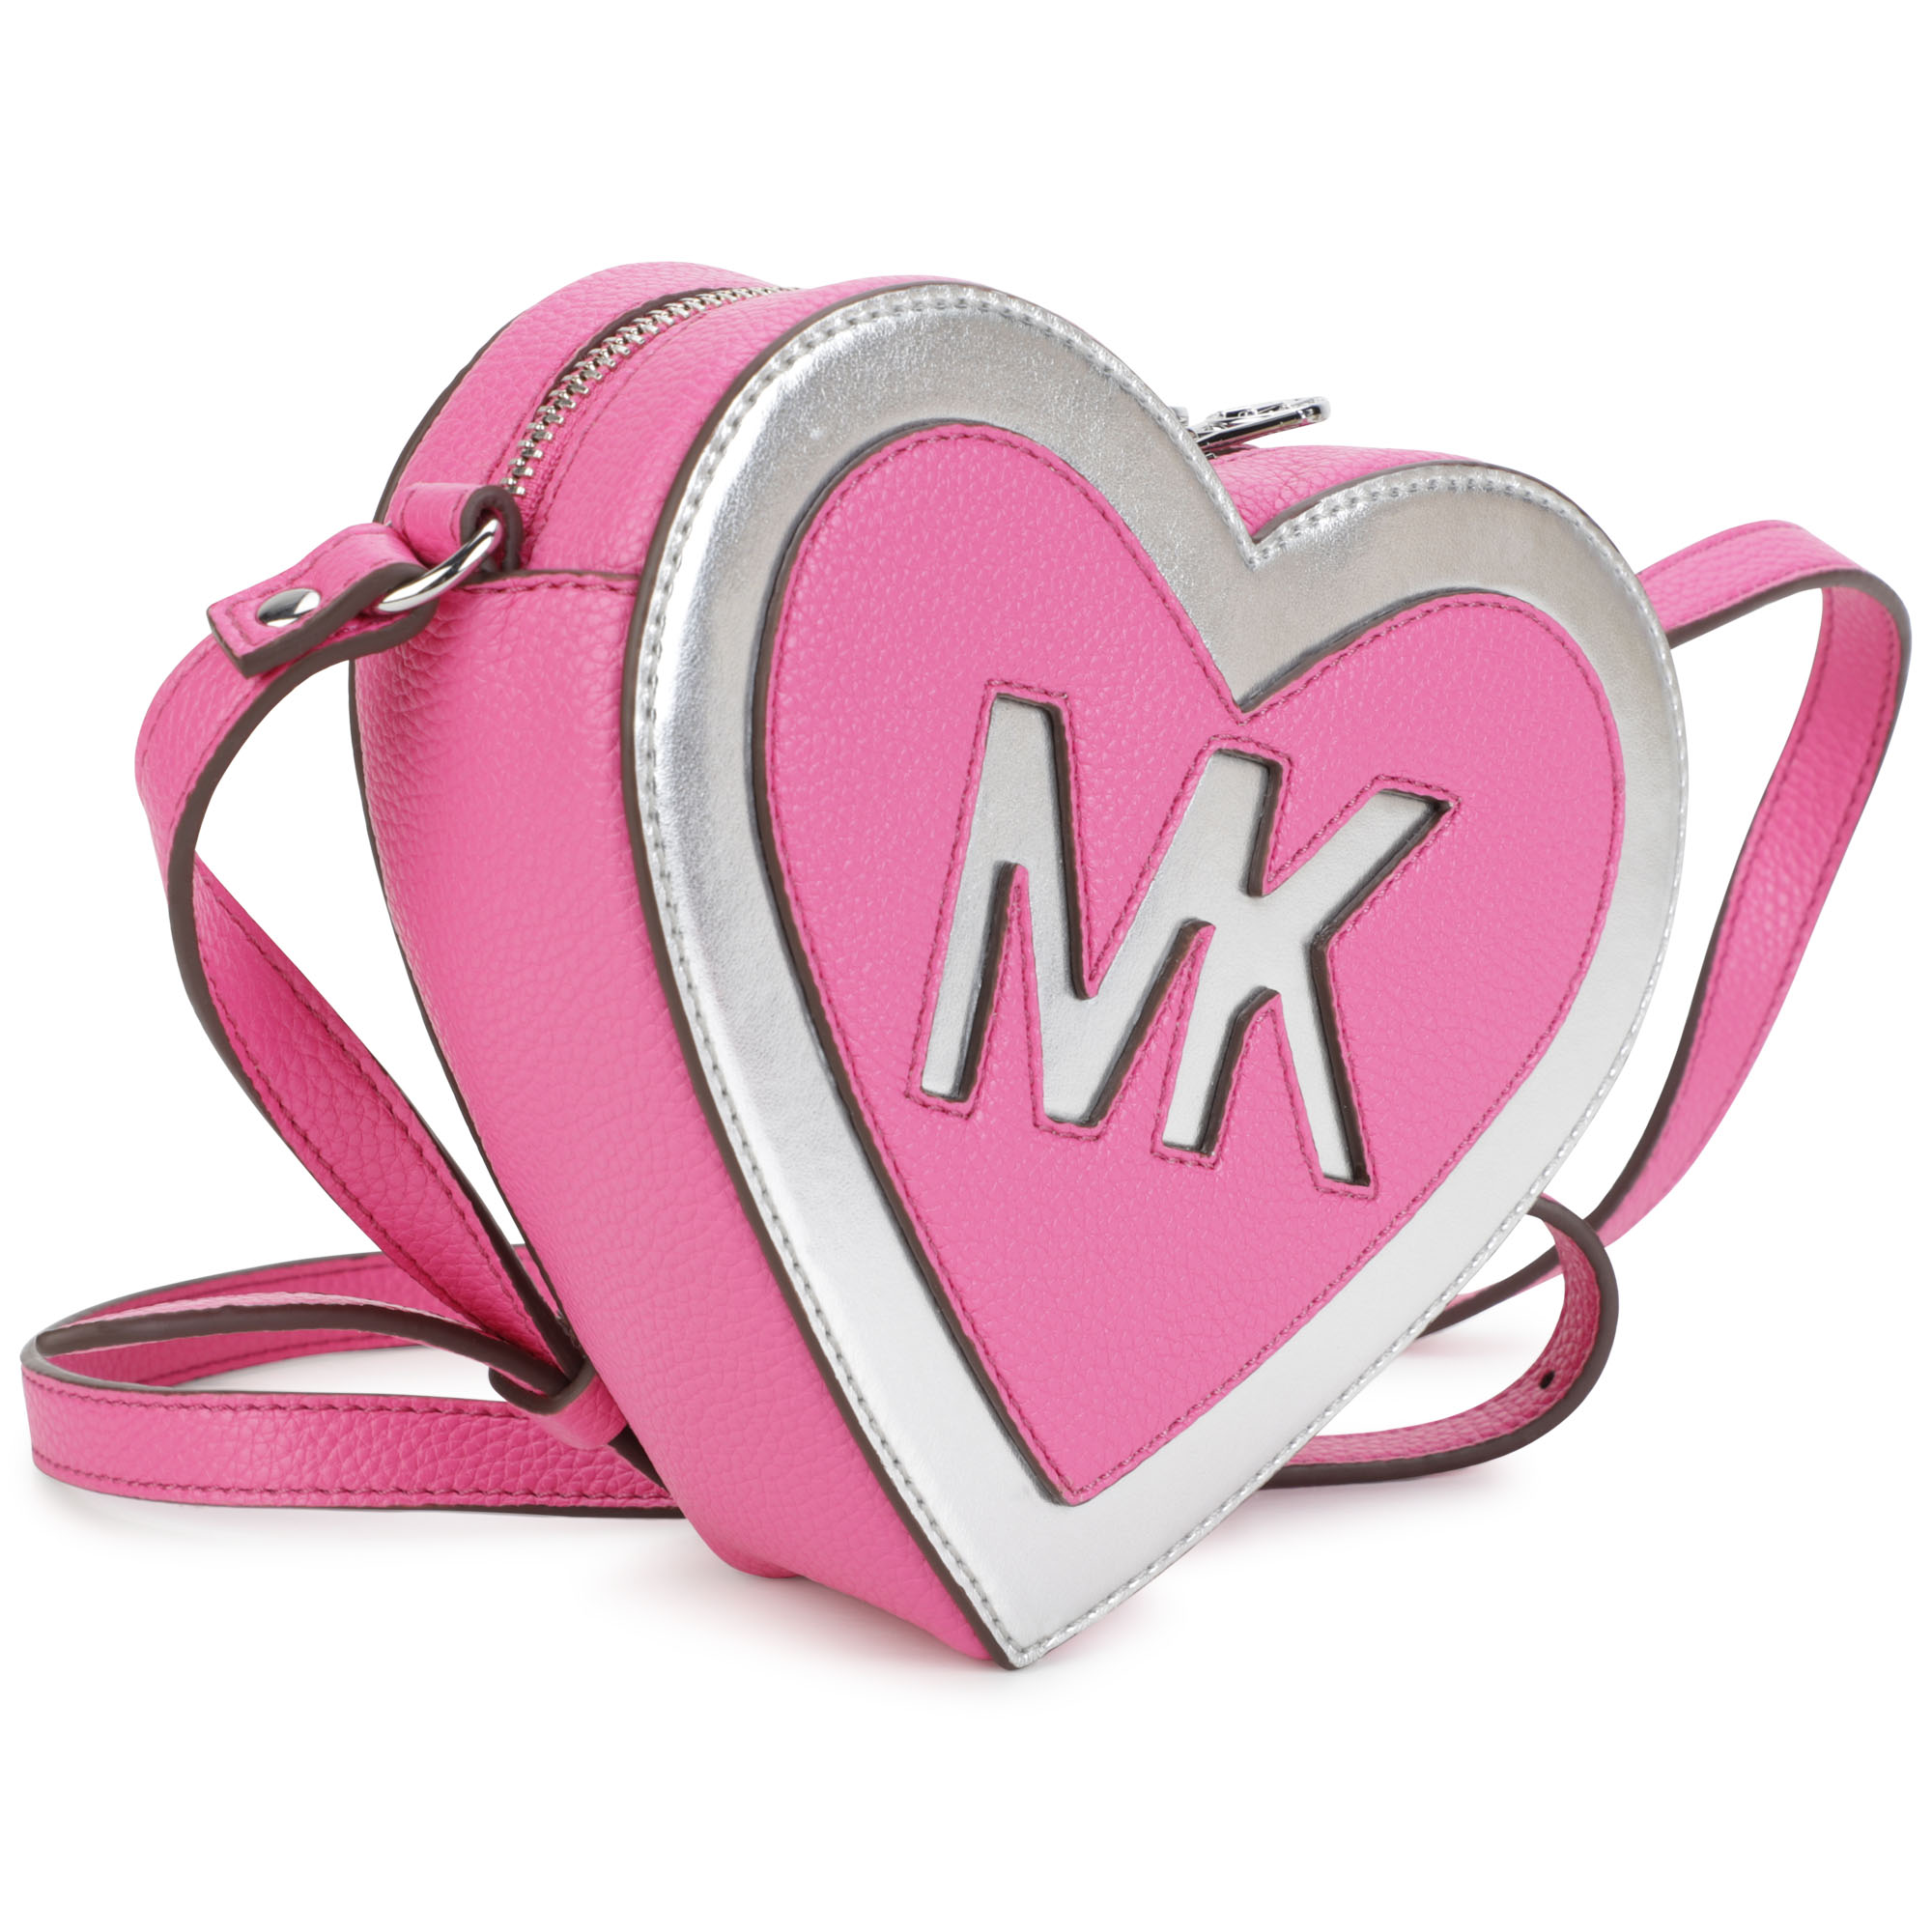 Heart-shaped handbag MICHAEL KORS for GIRL